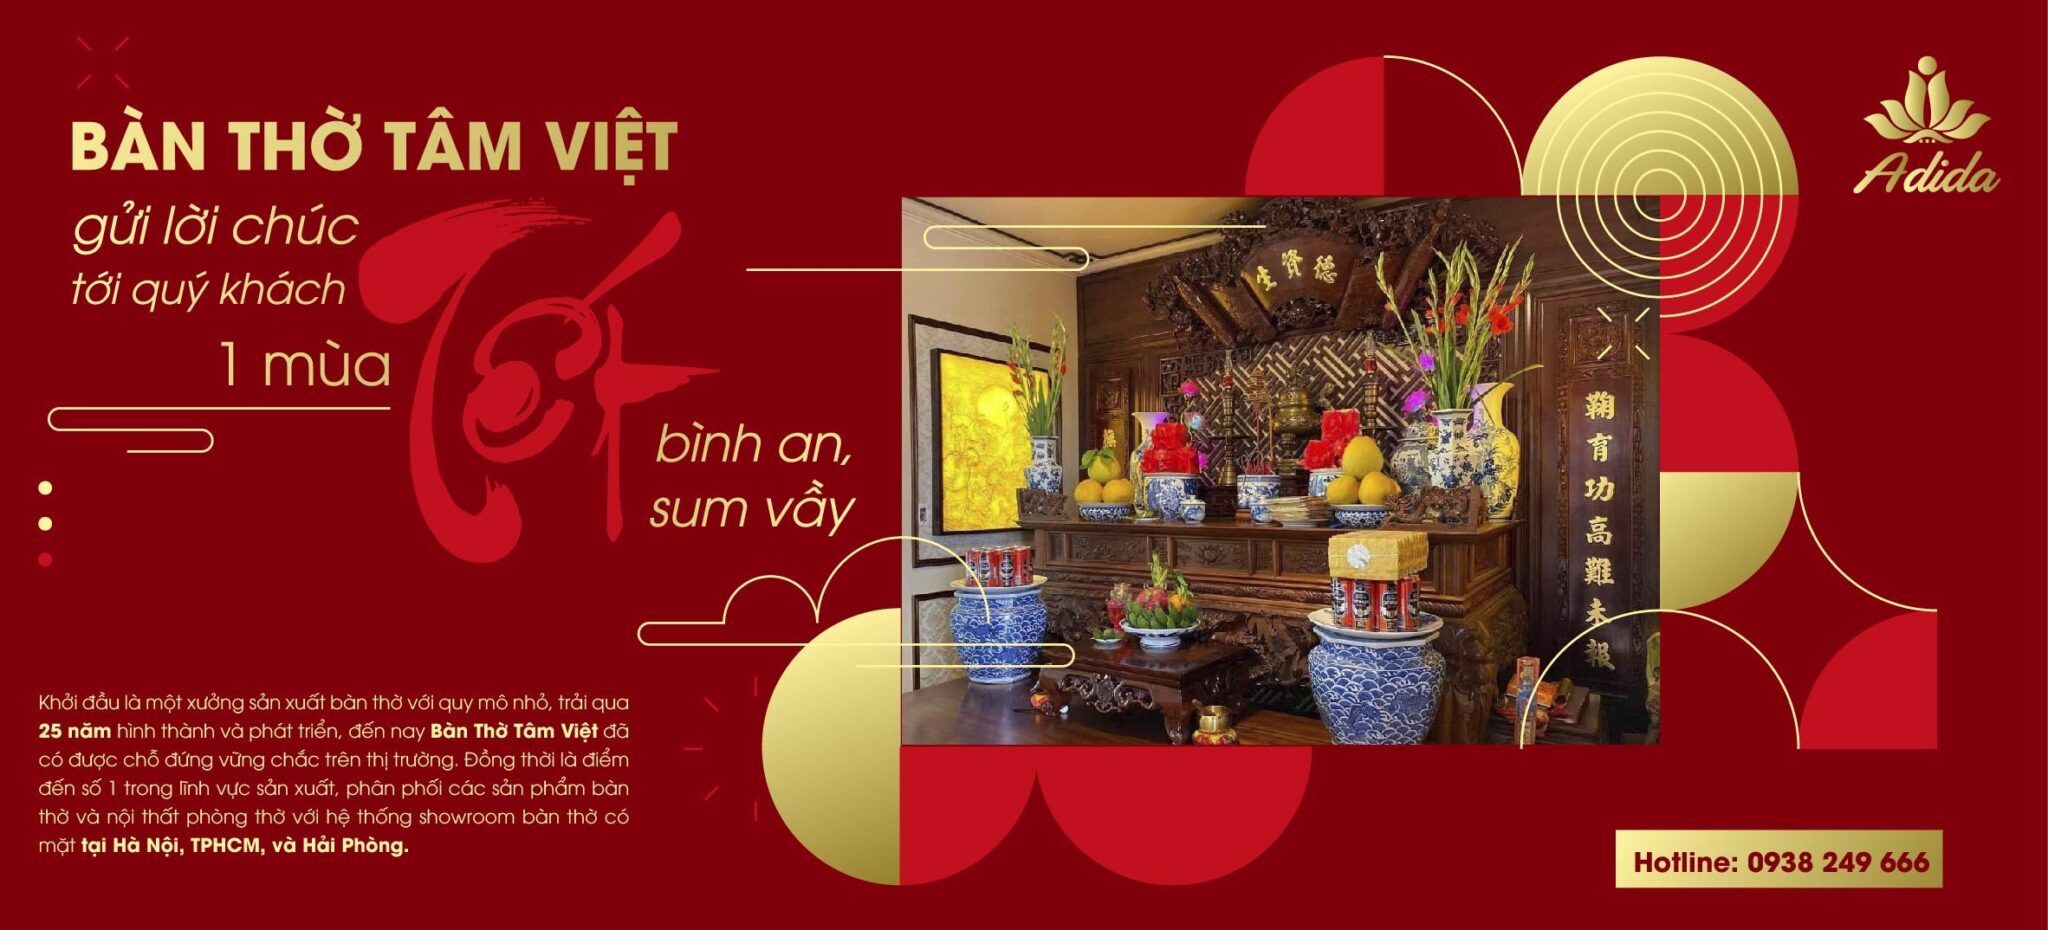 Bàn Thờ Tâm Việt - Chúc mừng năm mới